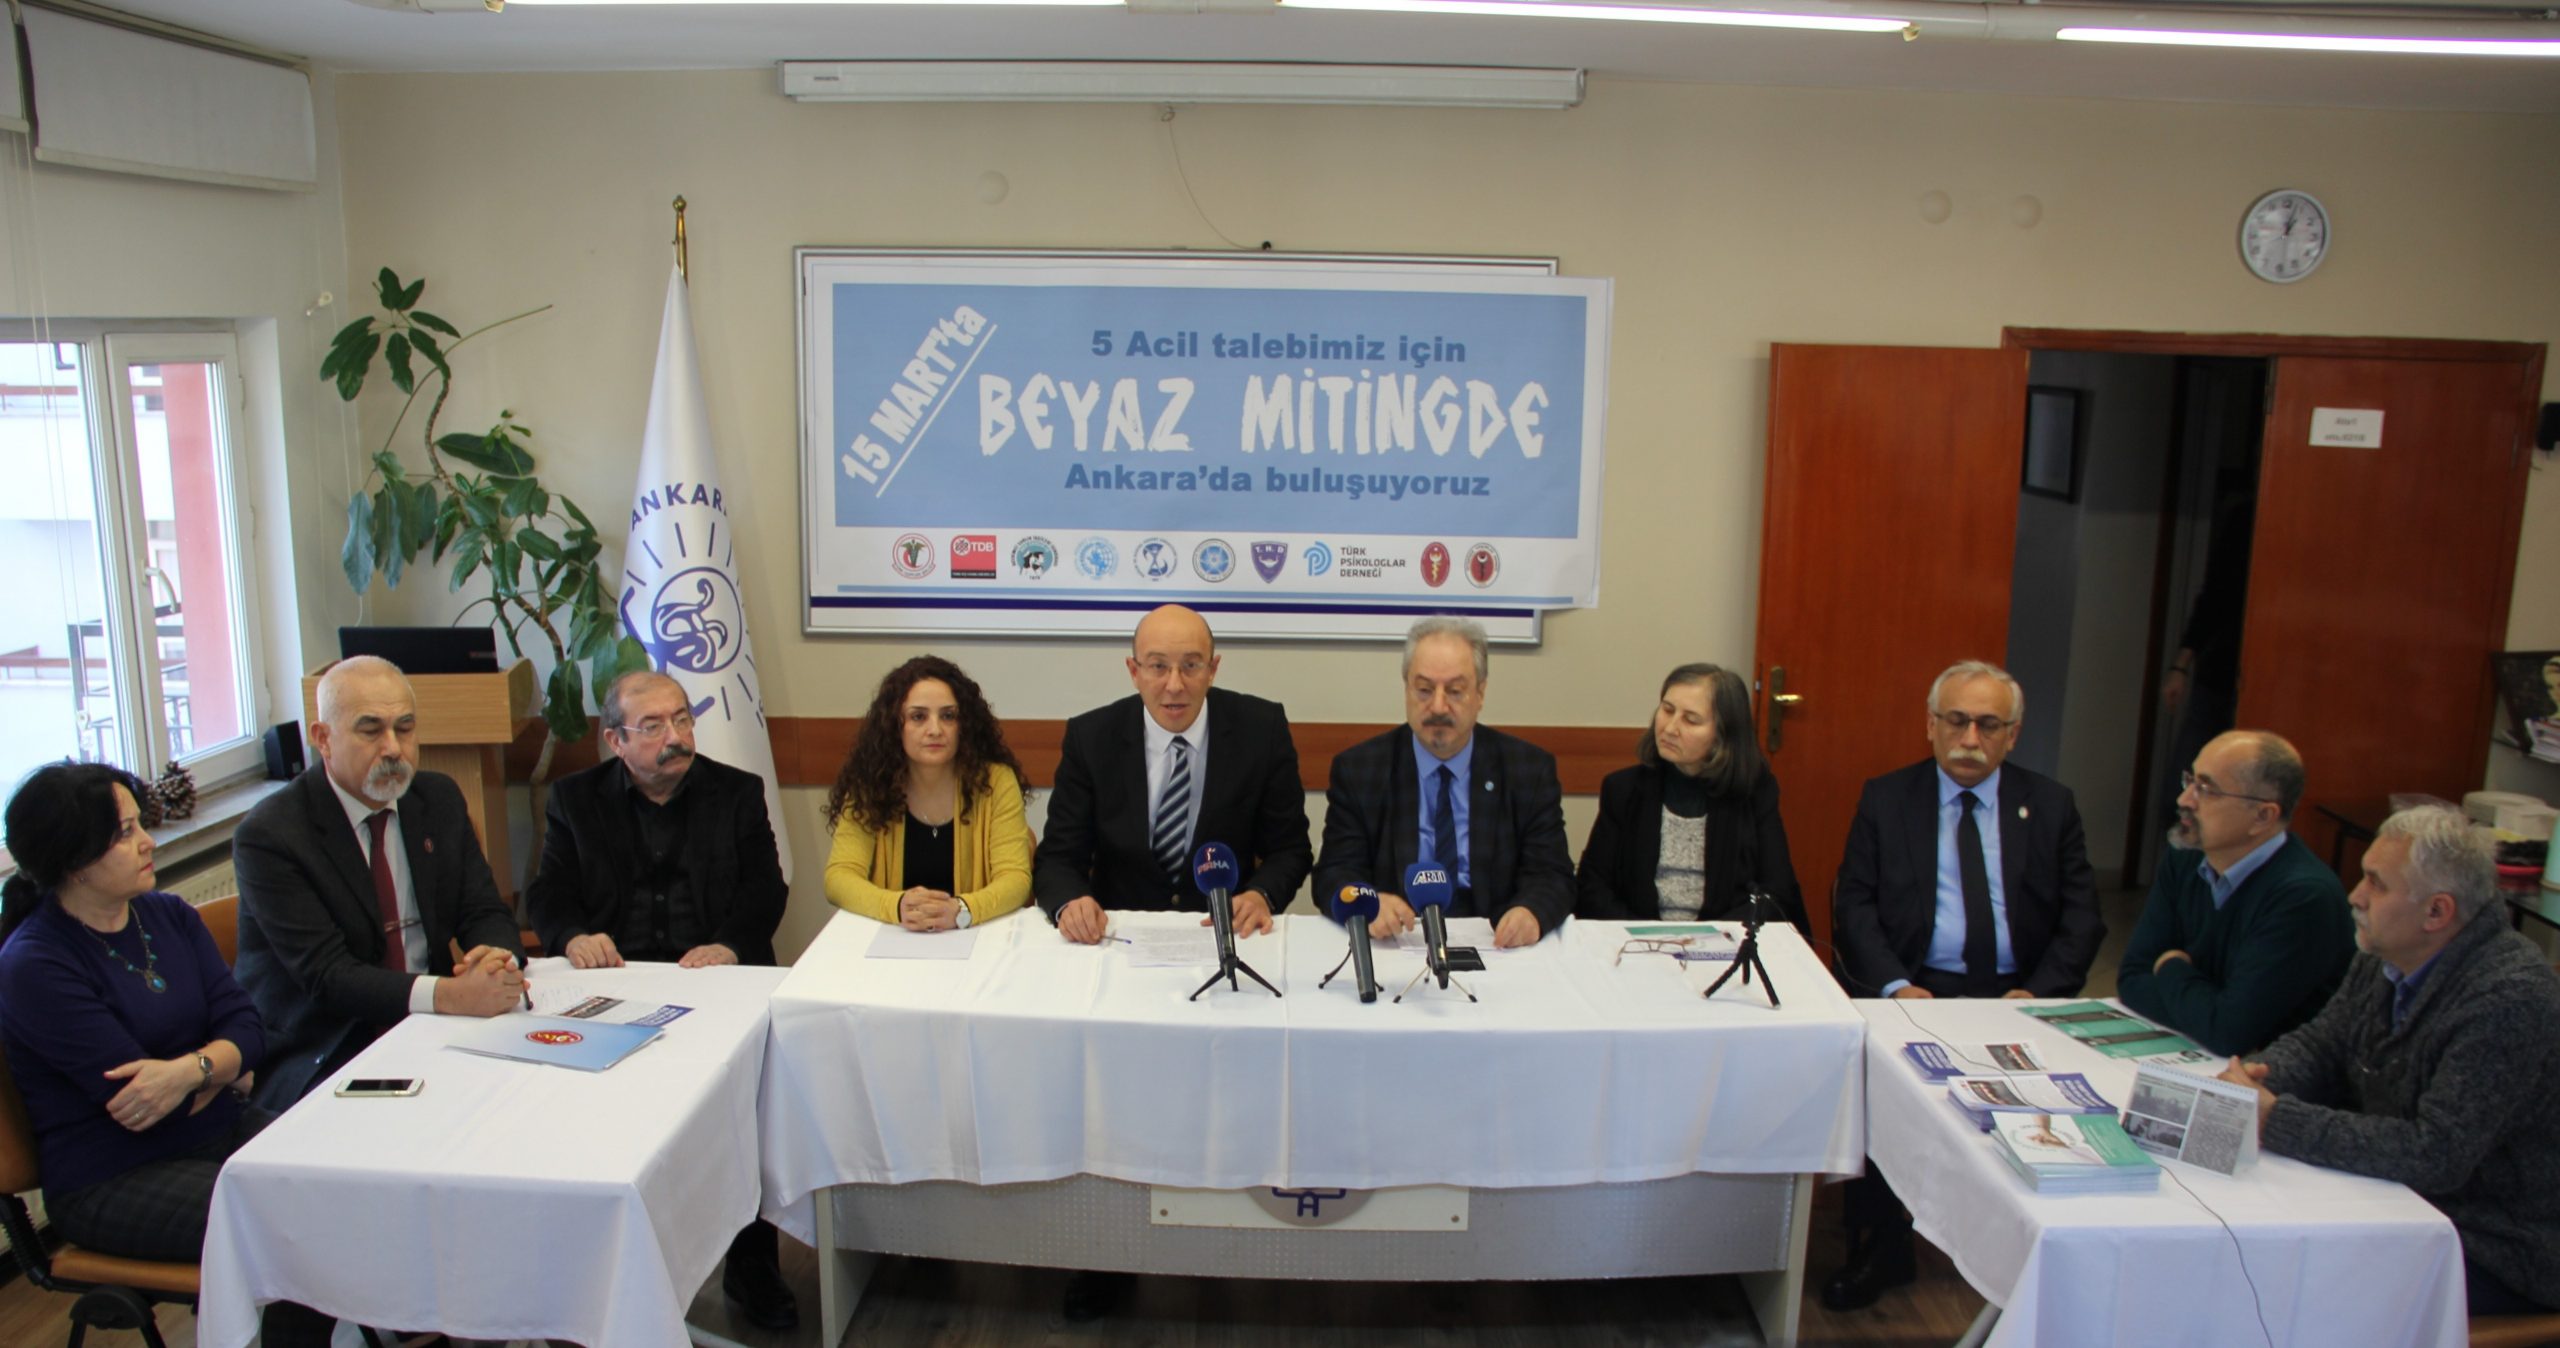 Ankara Sağlık Emek ve Meslek Örgütlerinden 15 Mart Ankara Büyük Beyaz Mitingi’ne Çağrı